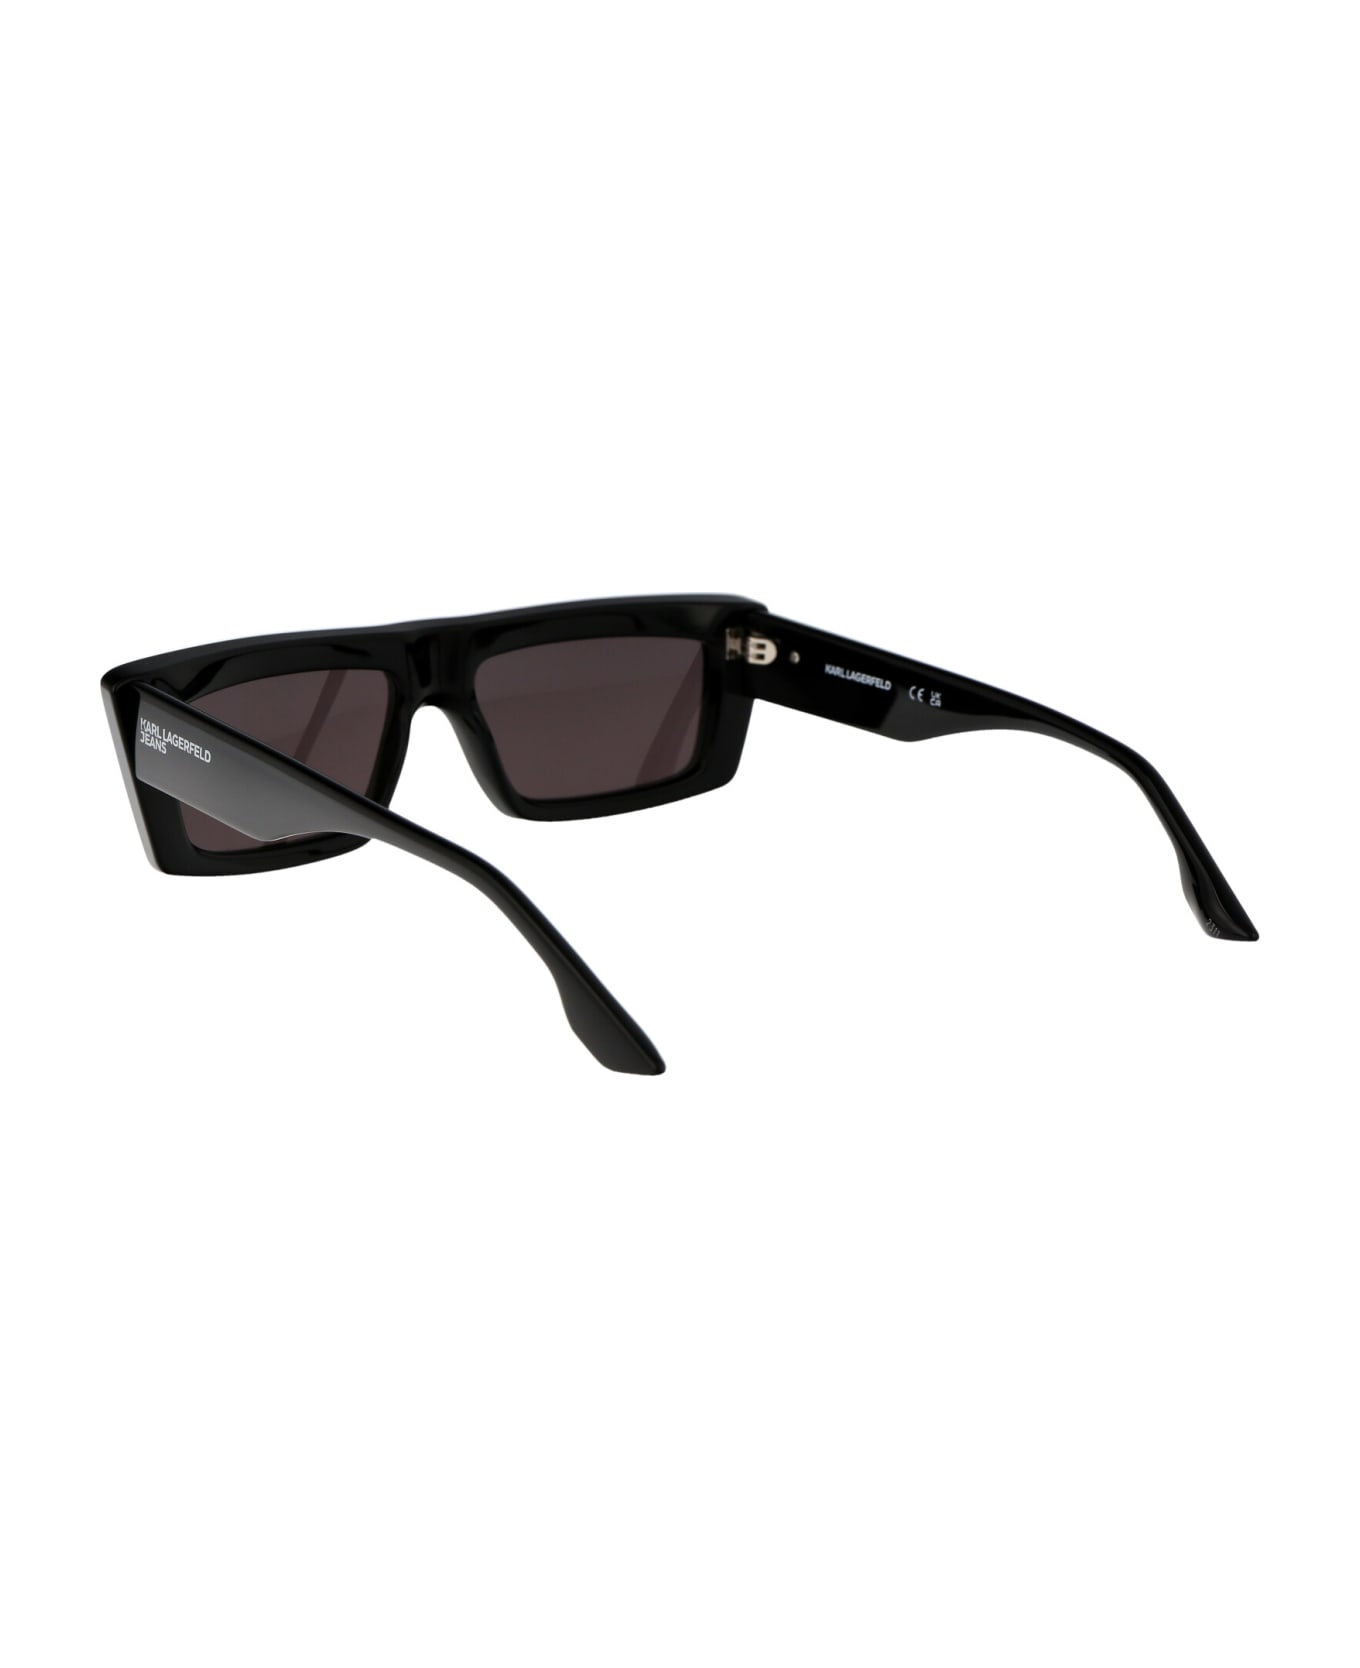 Karl Lagerfeld Klj6147s Sunglasses - 001 BLACK サングラス